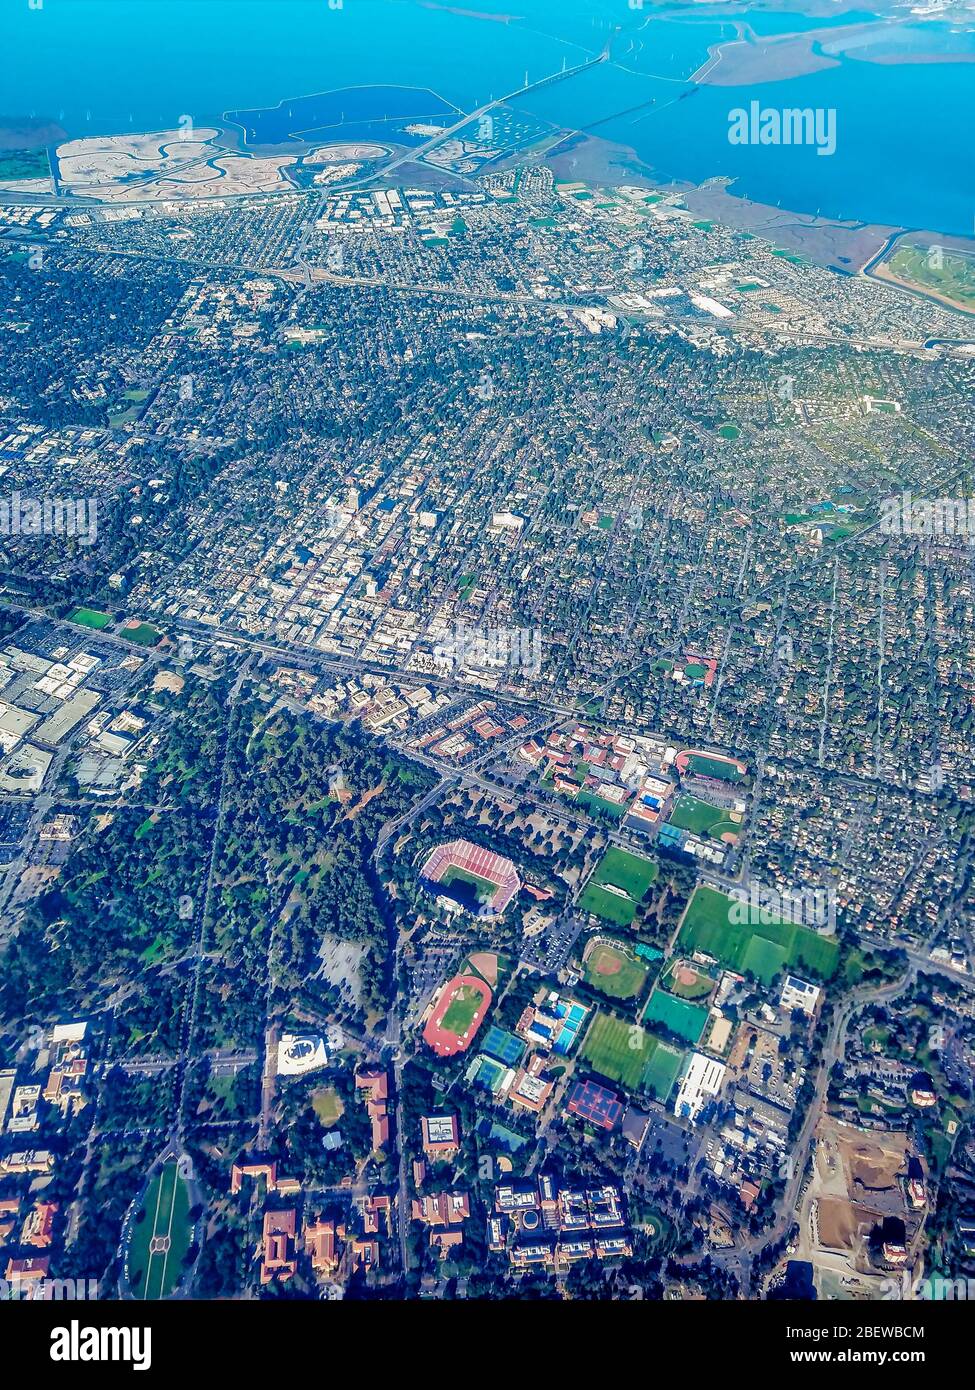 Vista aérea del área de la Bahía de San Francisco aproximadamente por encima de la ciudad de Palo Alto en la península. Foto de stock